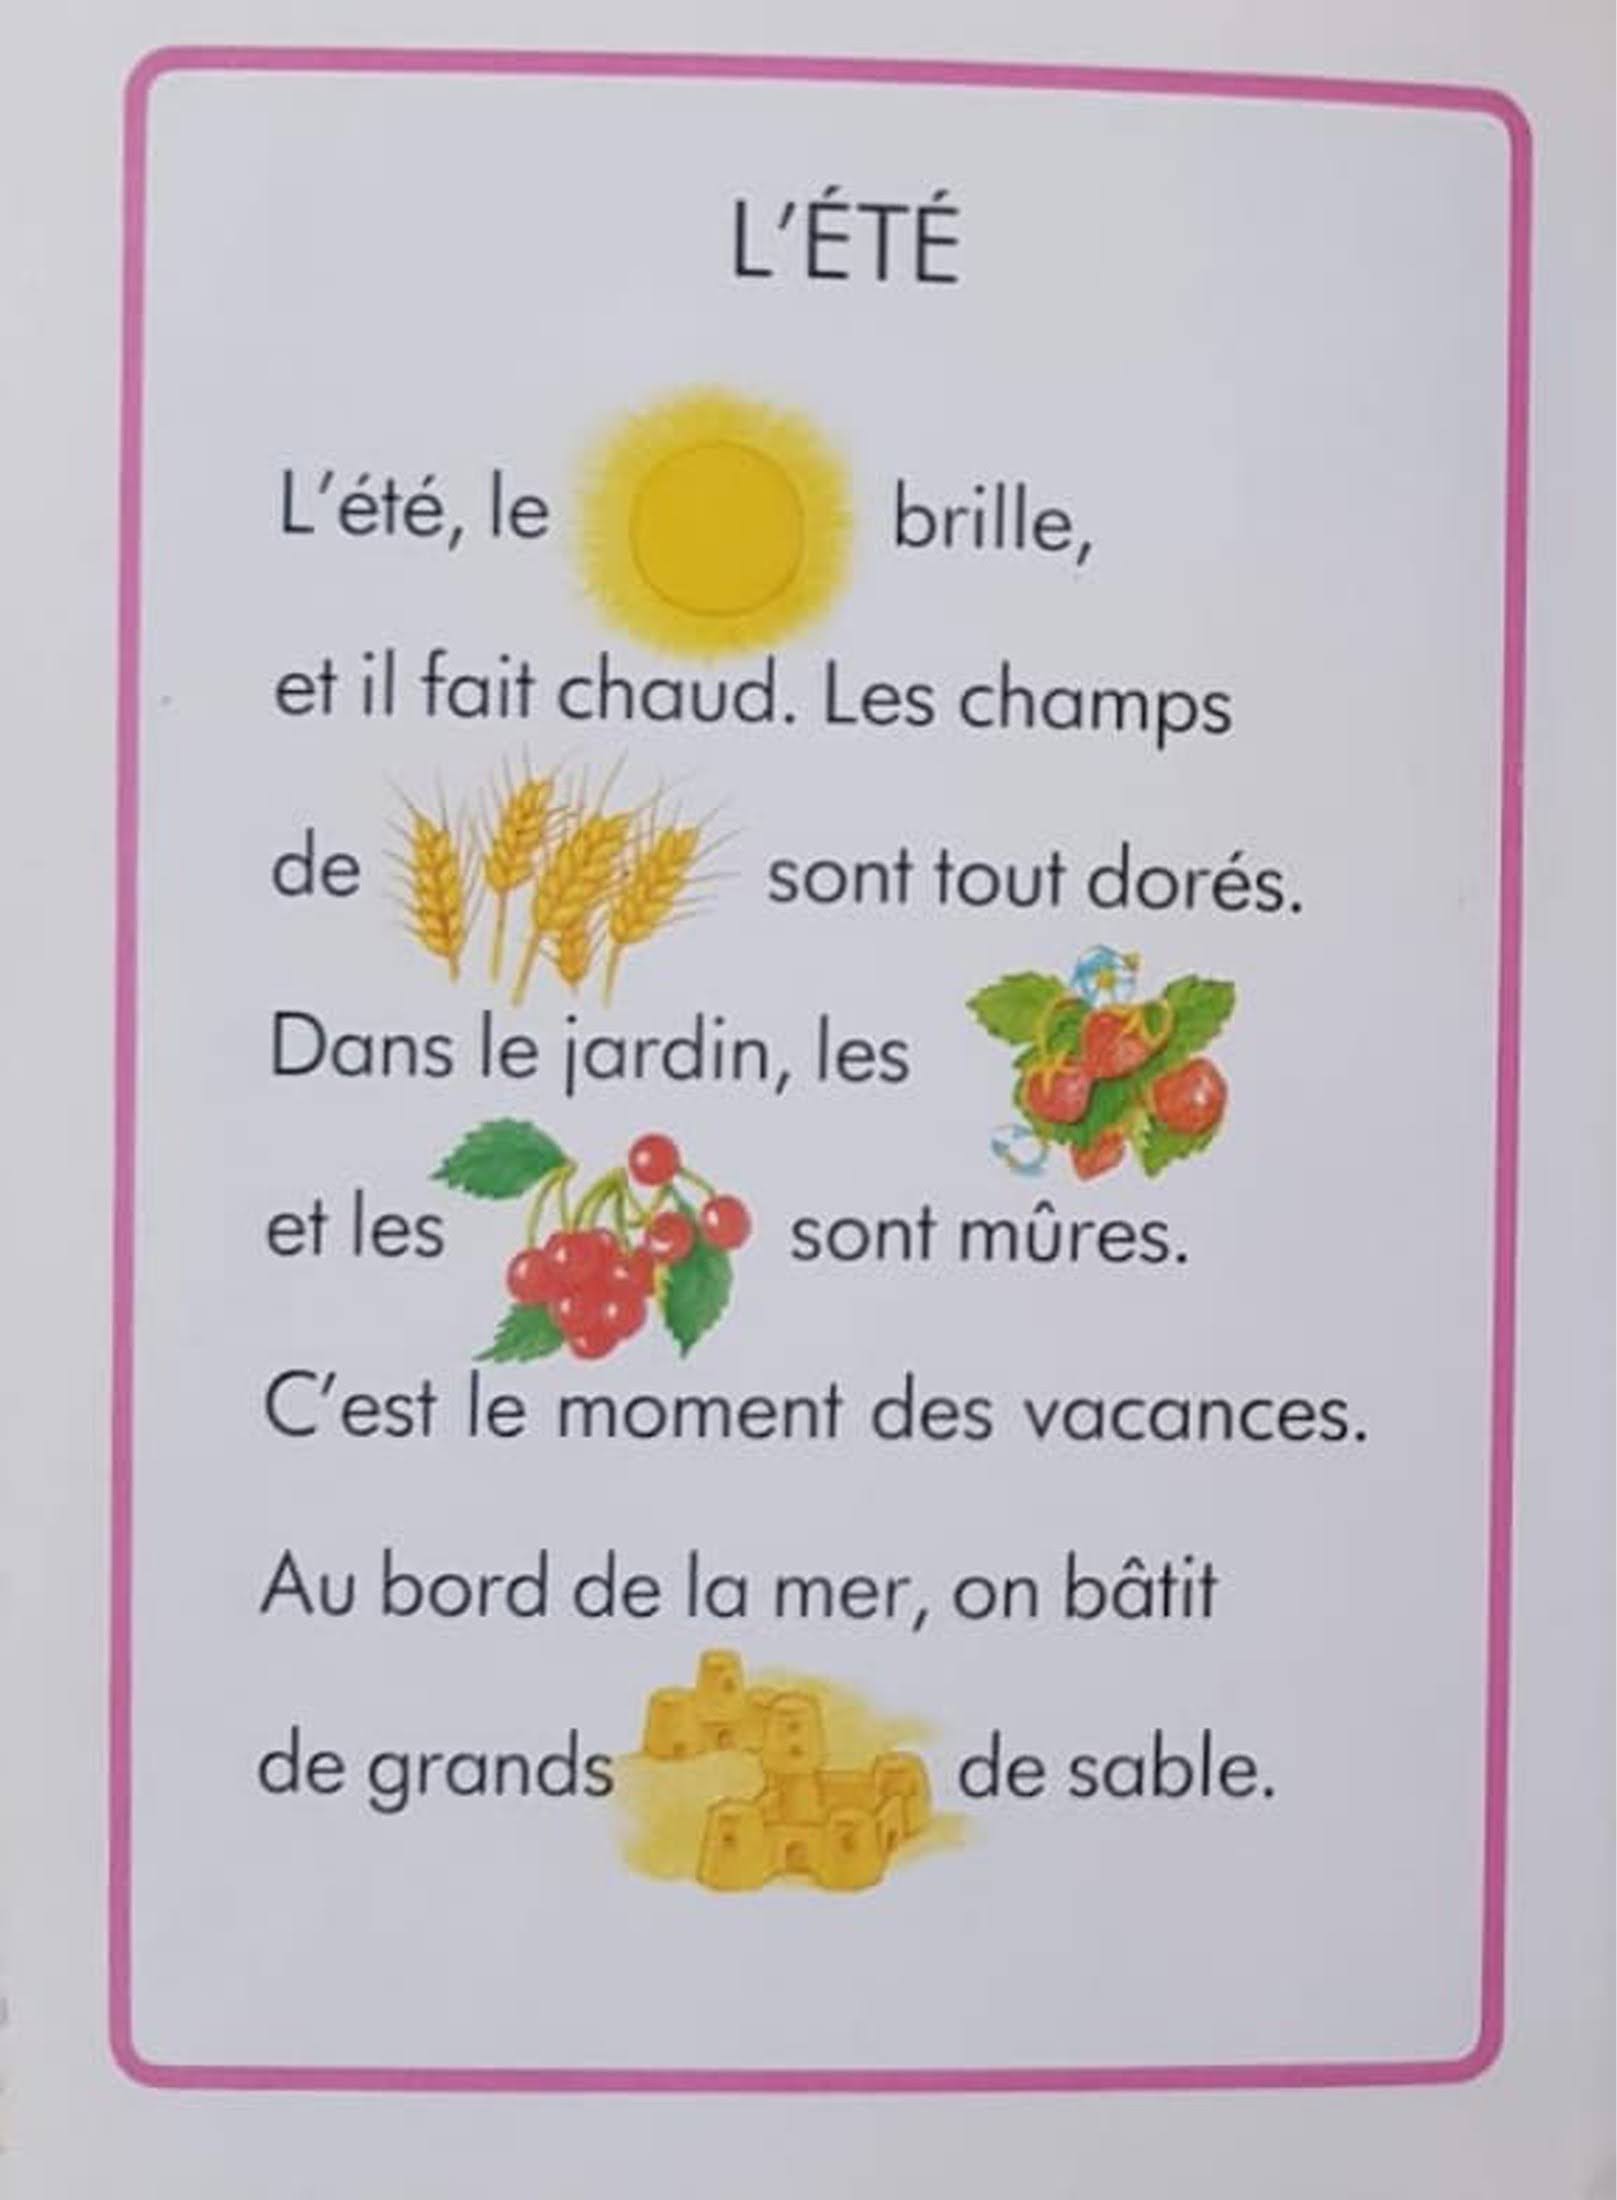 Les Mois et les Saisons Very Good Recuddles.ch  (6259843760313)